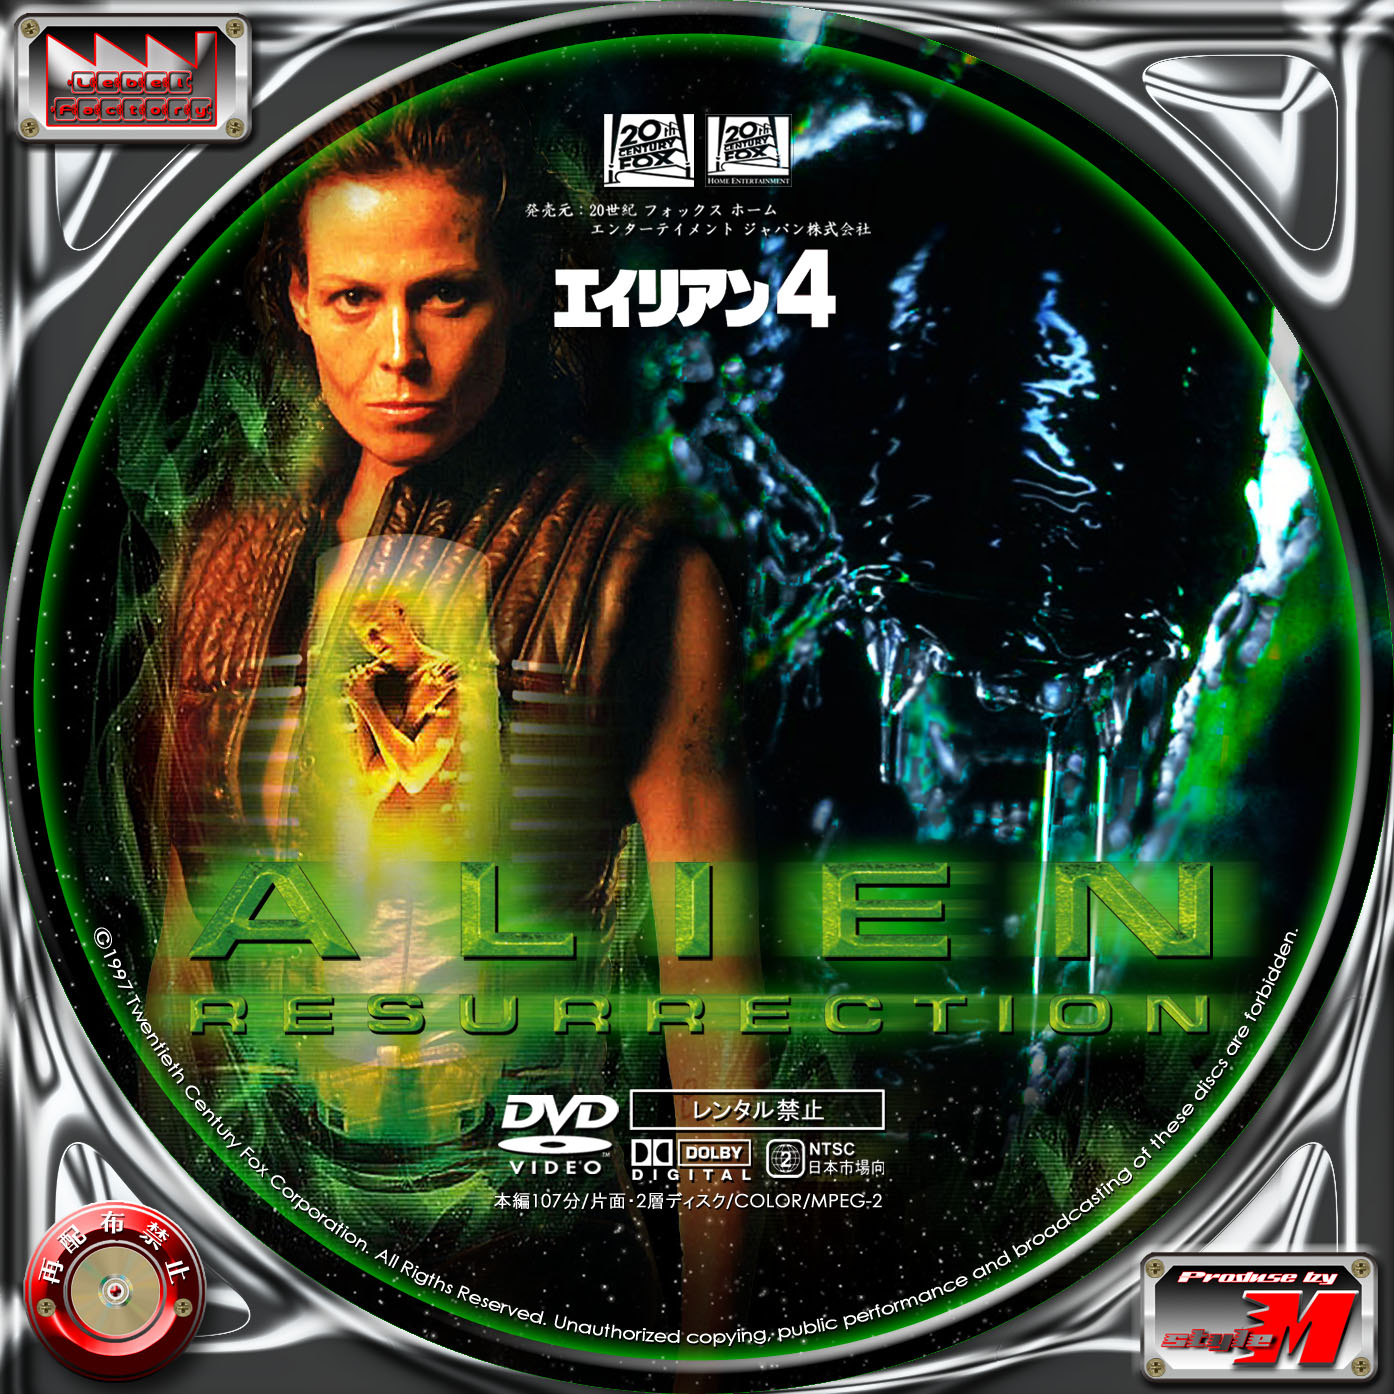 エイリアン4 Alien Resurrection Label Factory M Style 自作dvd レーベル ラベル